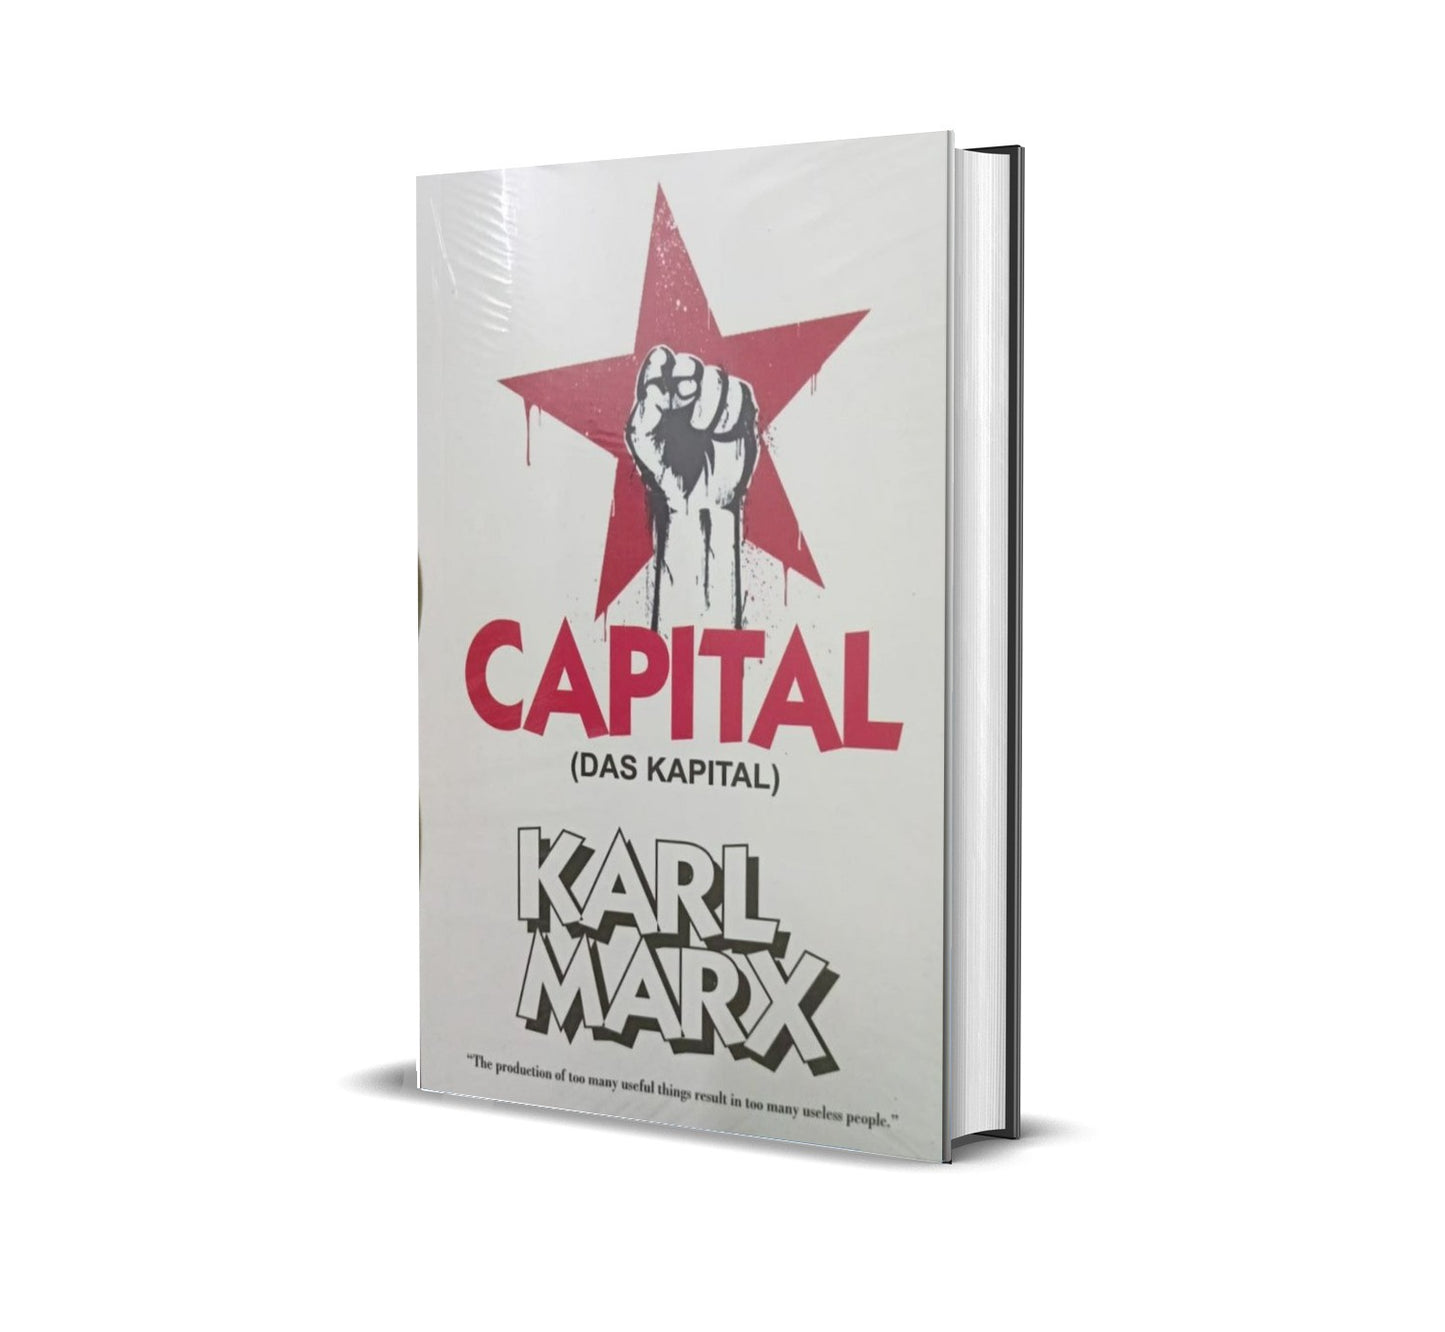 CAPITAL [DAS KAPITAL] by KARL MARX